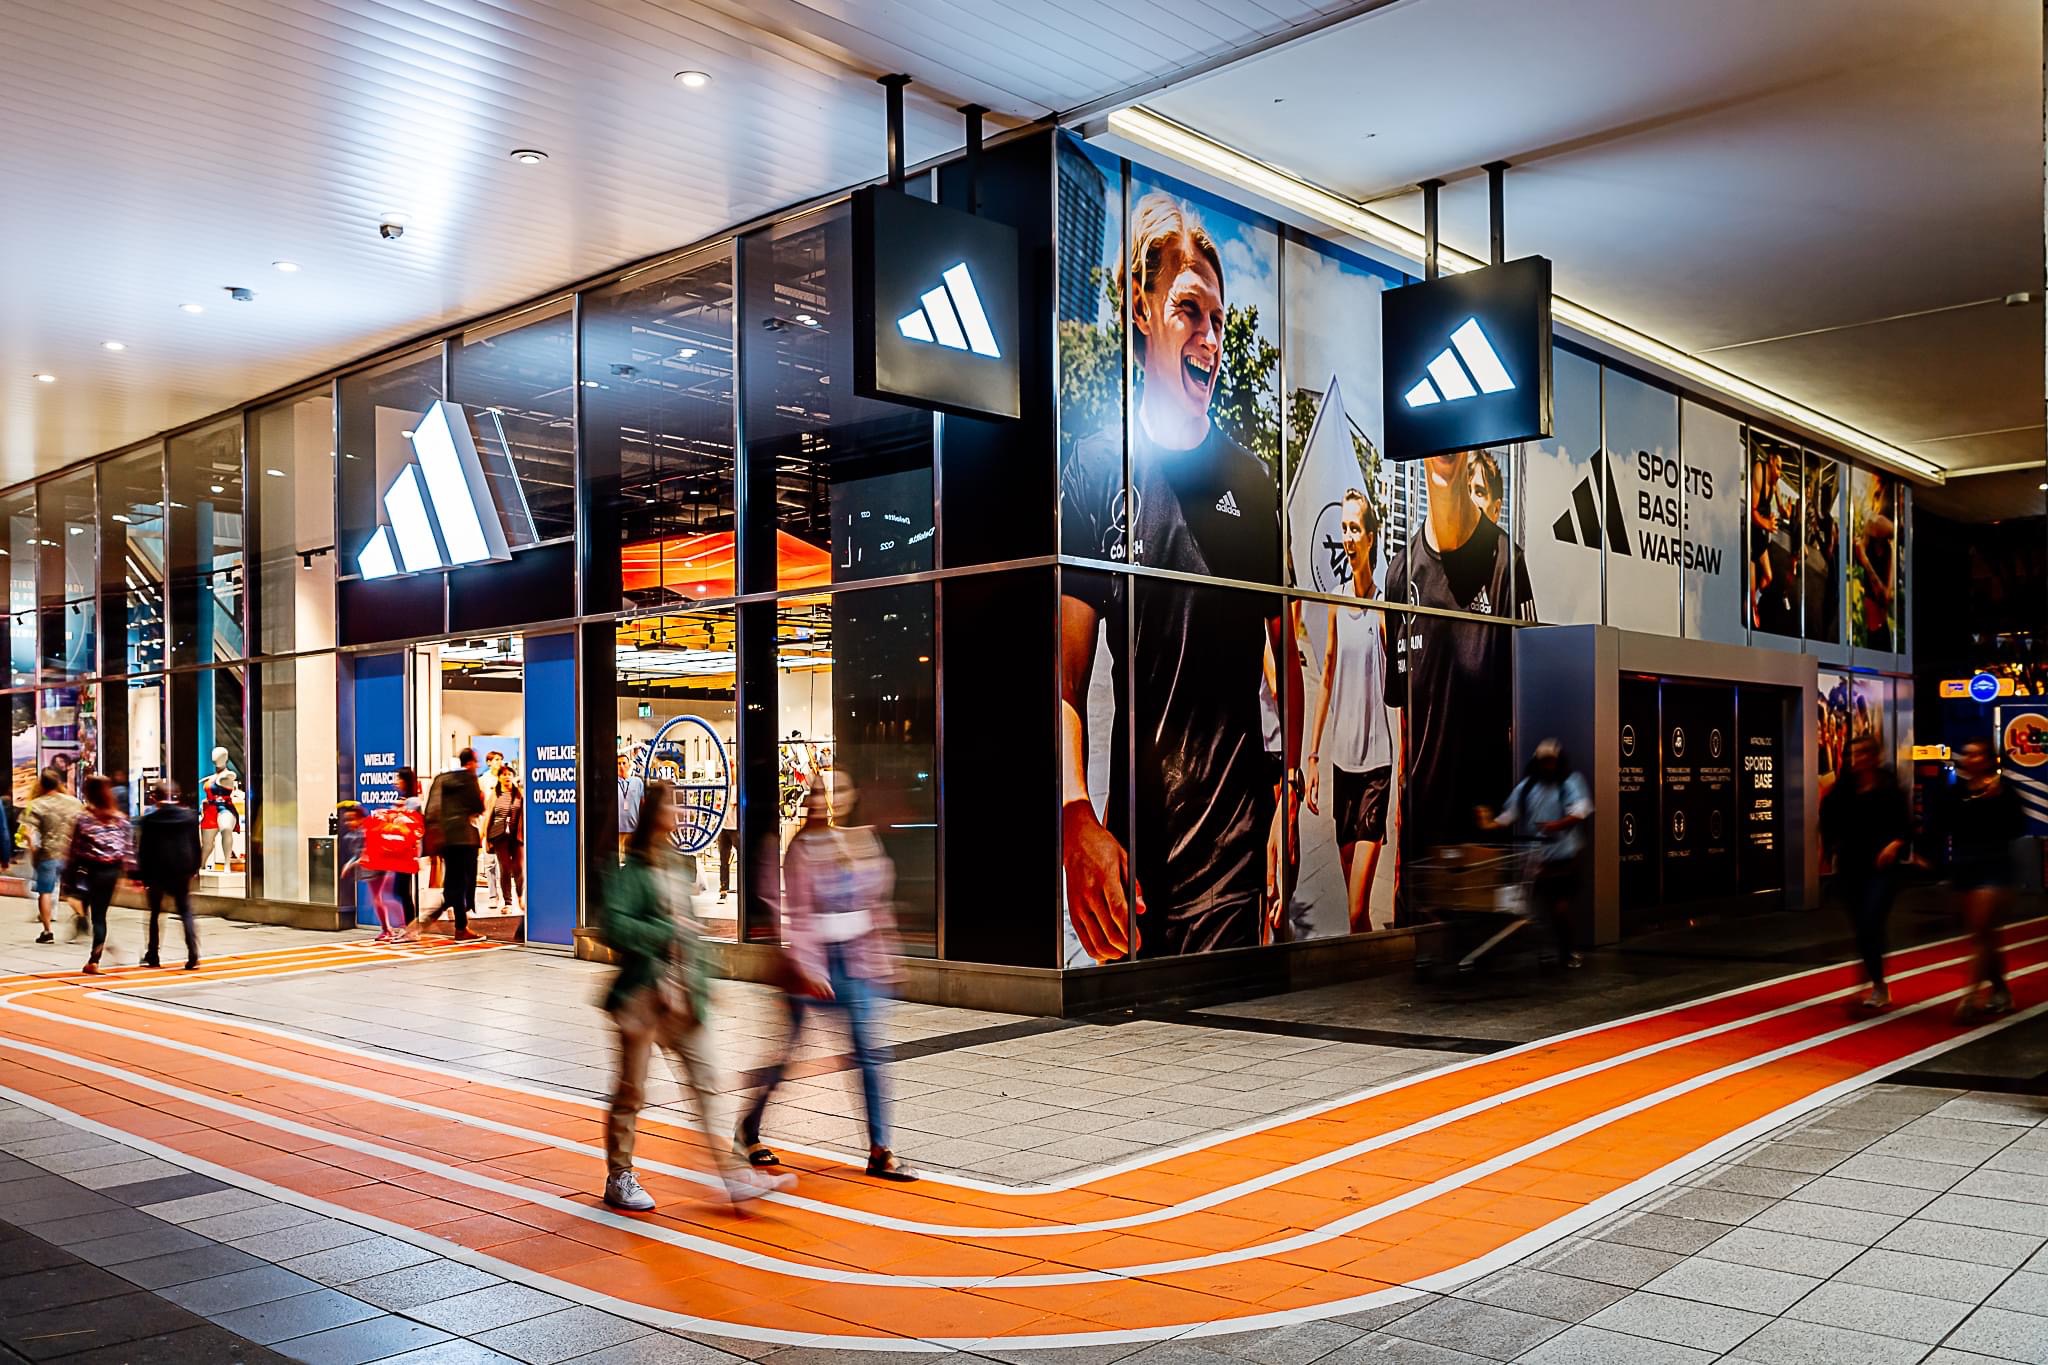 Jutro otwarcie adidas Warszawa. To największy sklep marki w Europie Środkowo-Wschodniej - Biegowe.pl wszystko o bieganiu